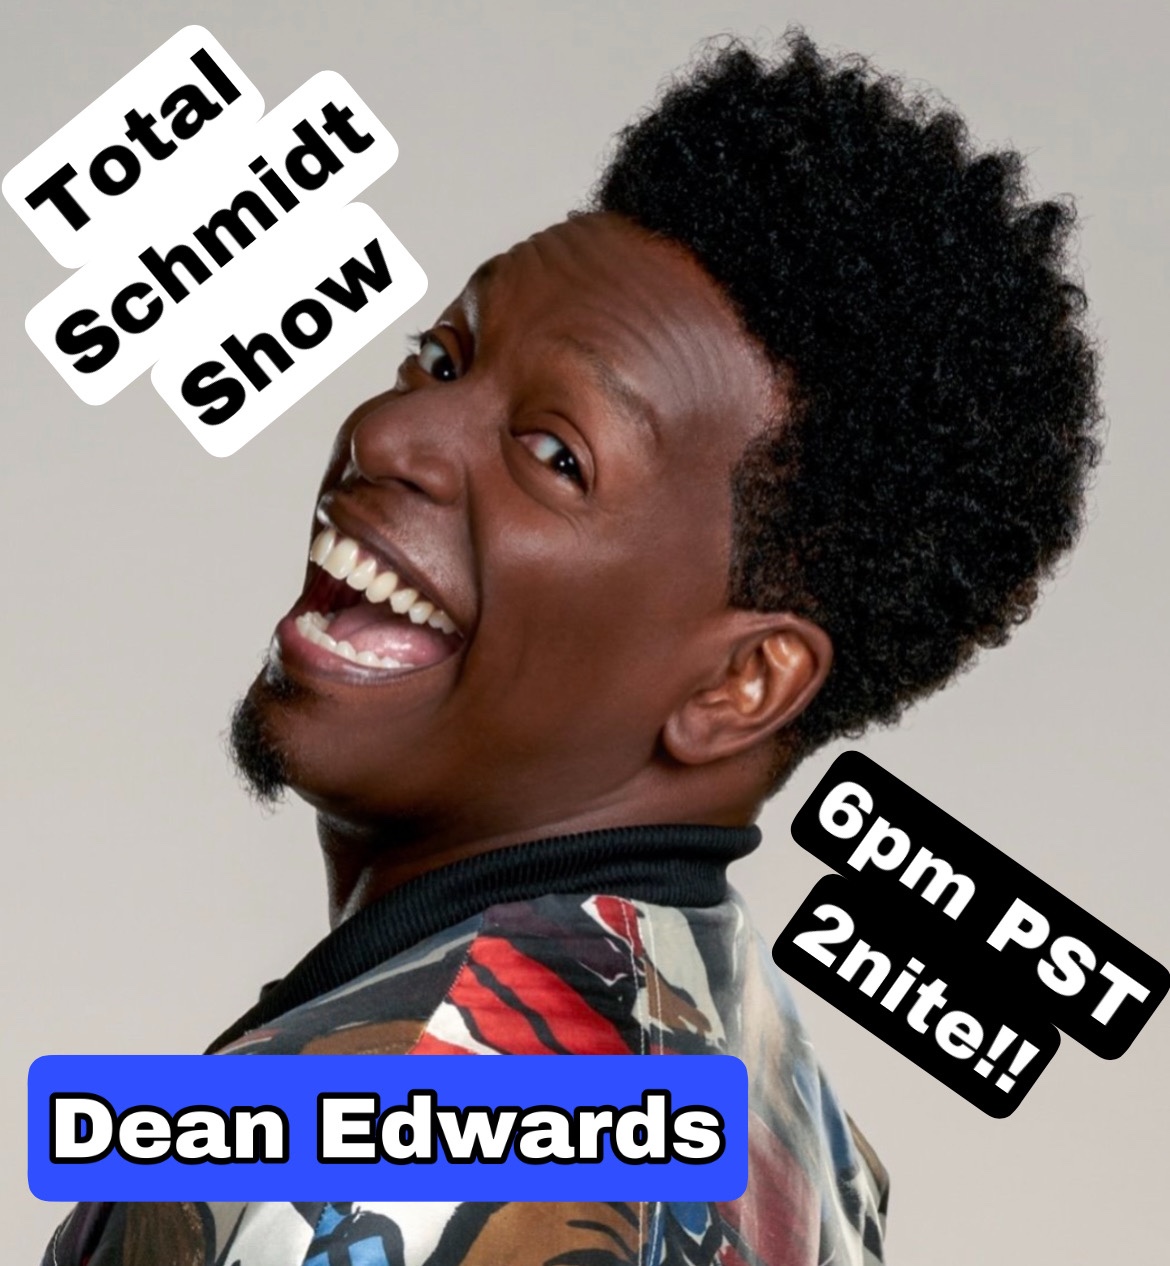 Total Schmidt Show (TSS22) Dean Edwards